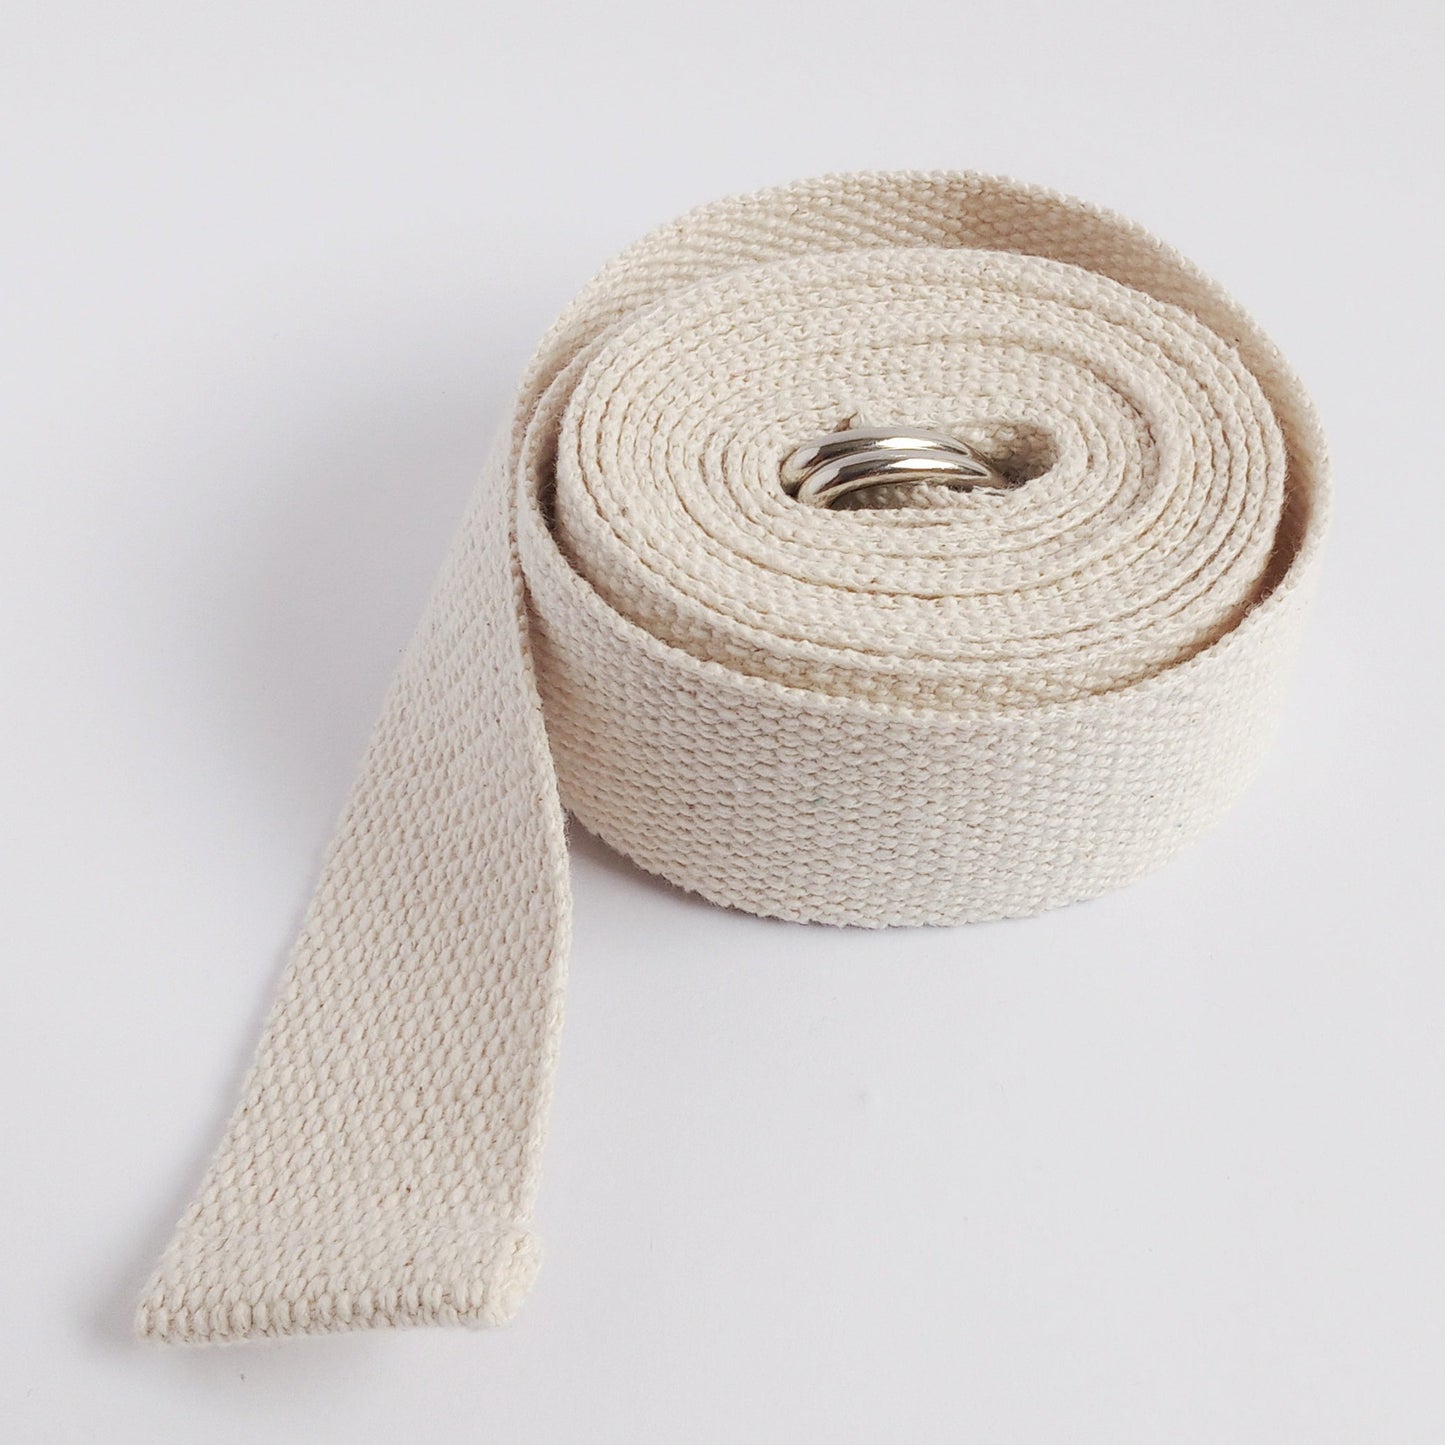 yoga kit cotton strap